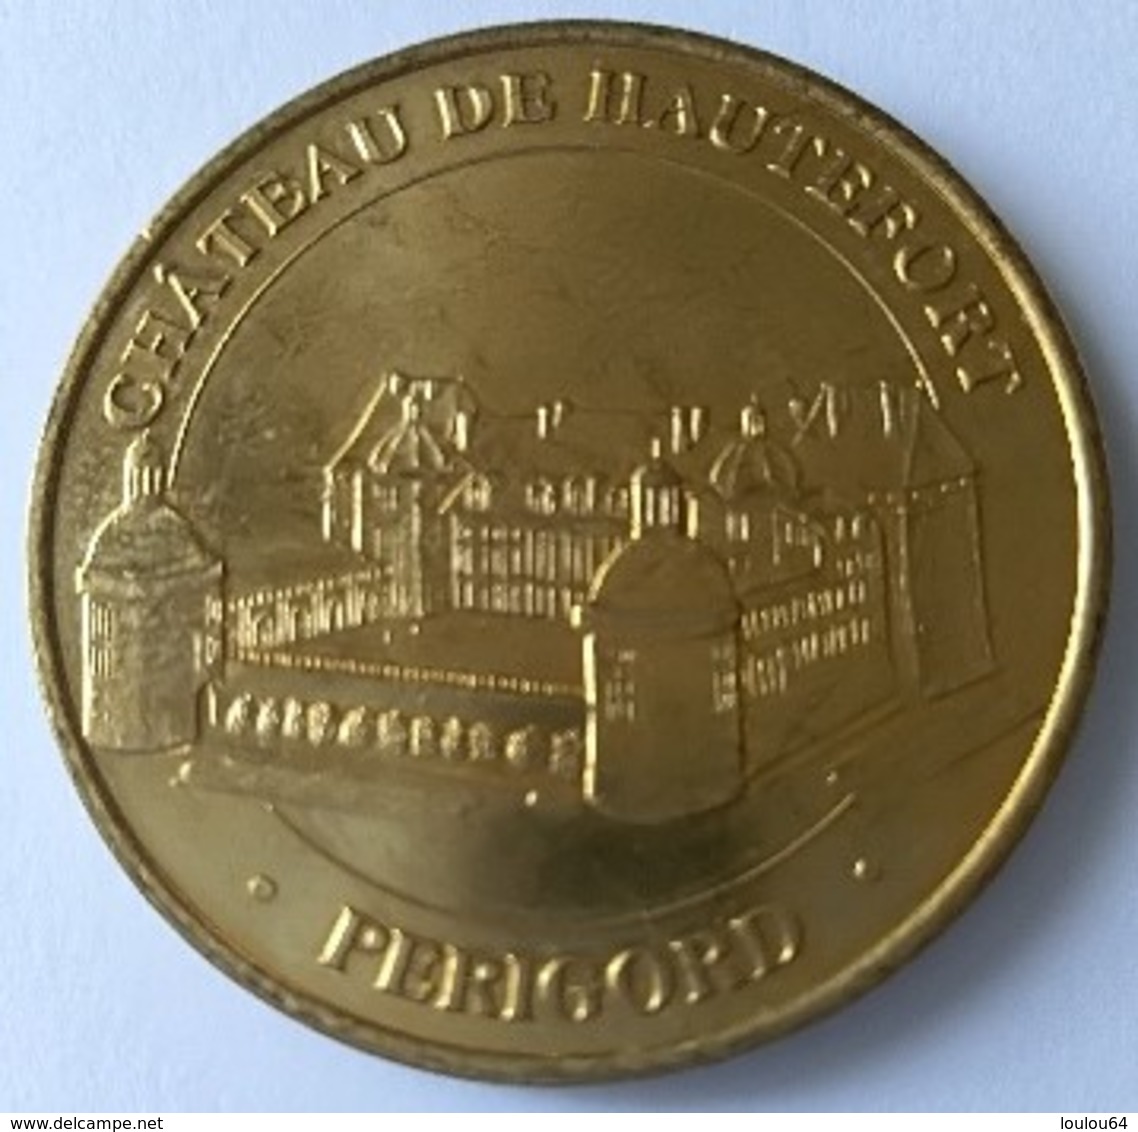 Médaille - Monnaie De Paris - Château De Hautefort - PERIGORD - Non Datée - - Ohne Datum